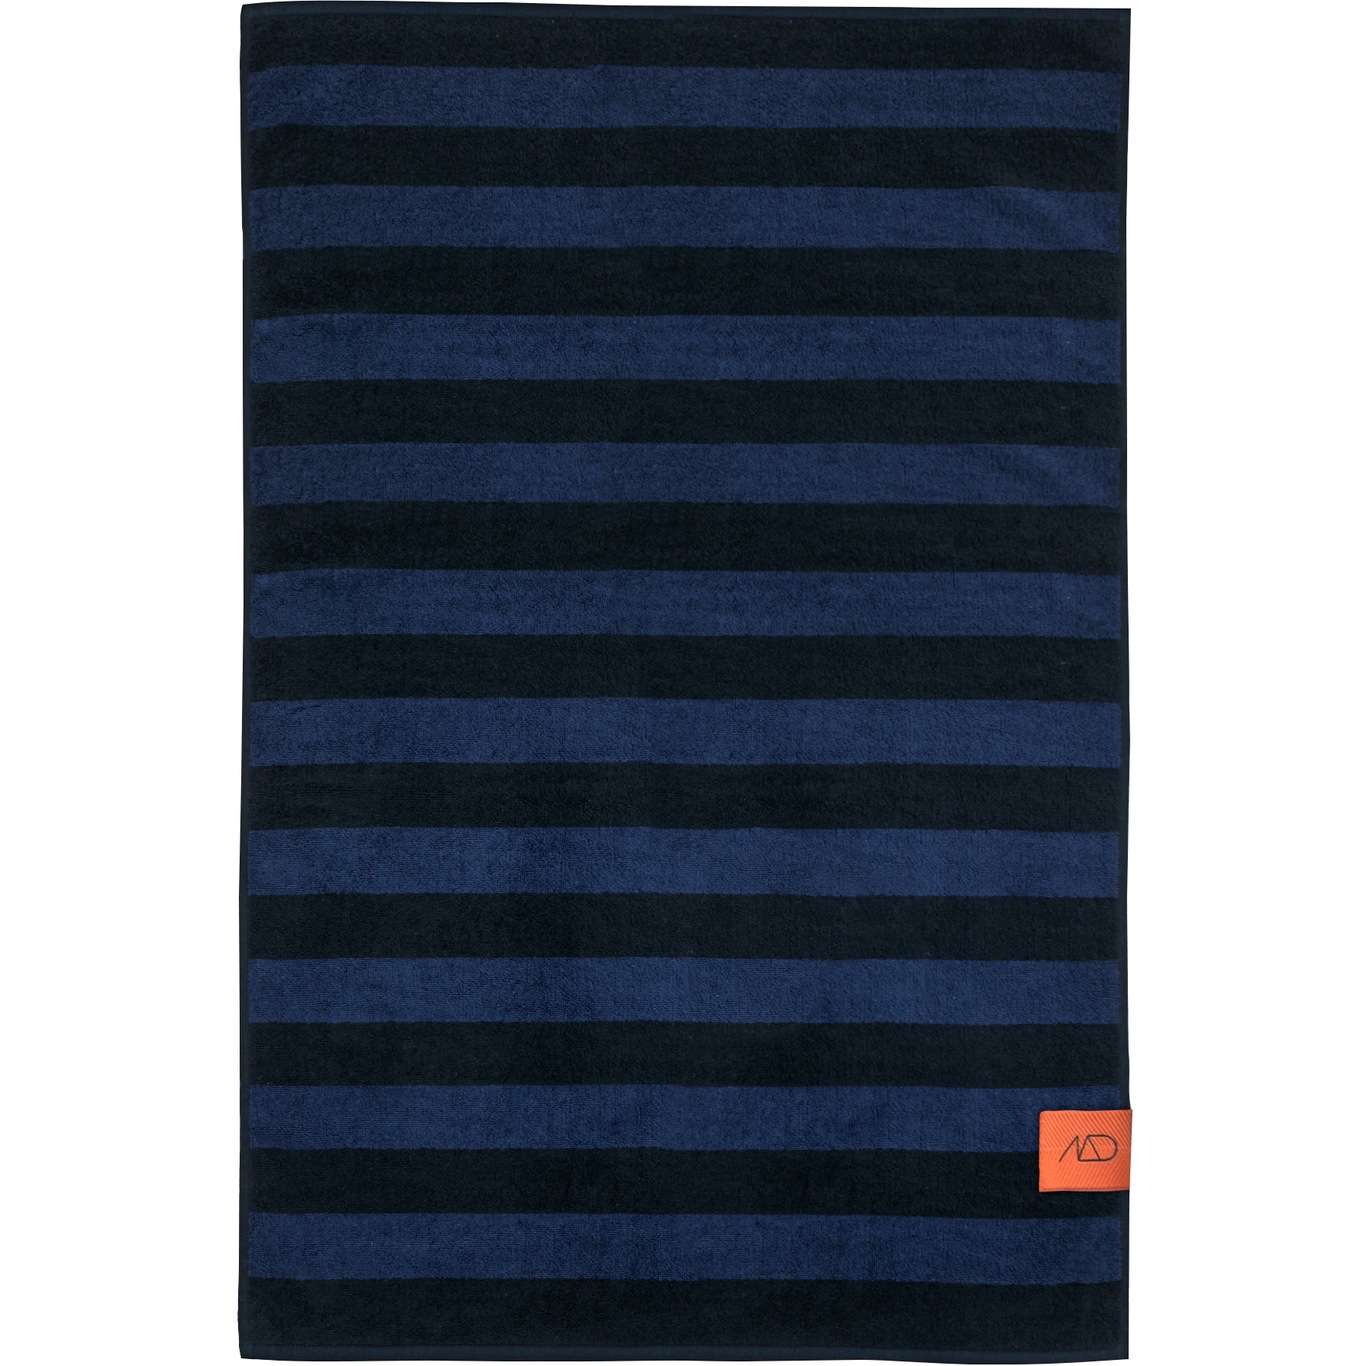 Aros Håndklæde Midnatsblåt 2-pak, 35x55 cm